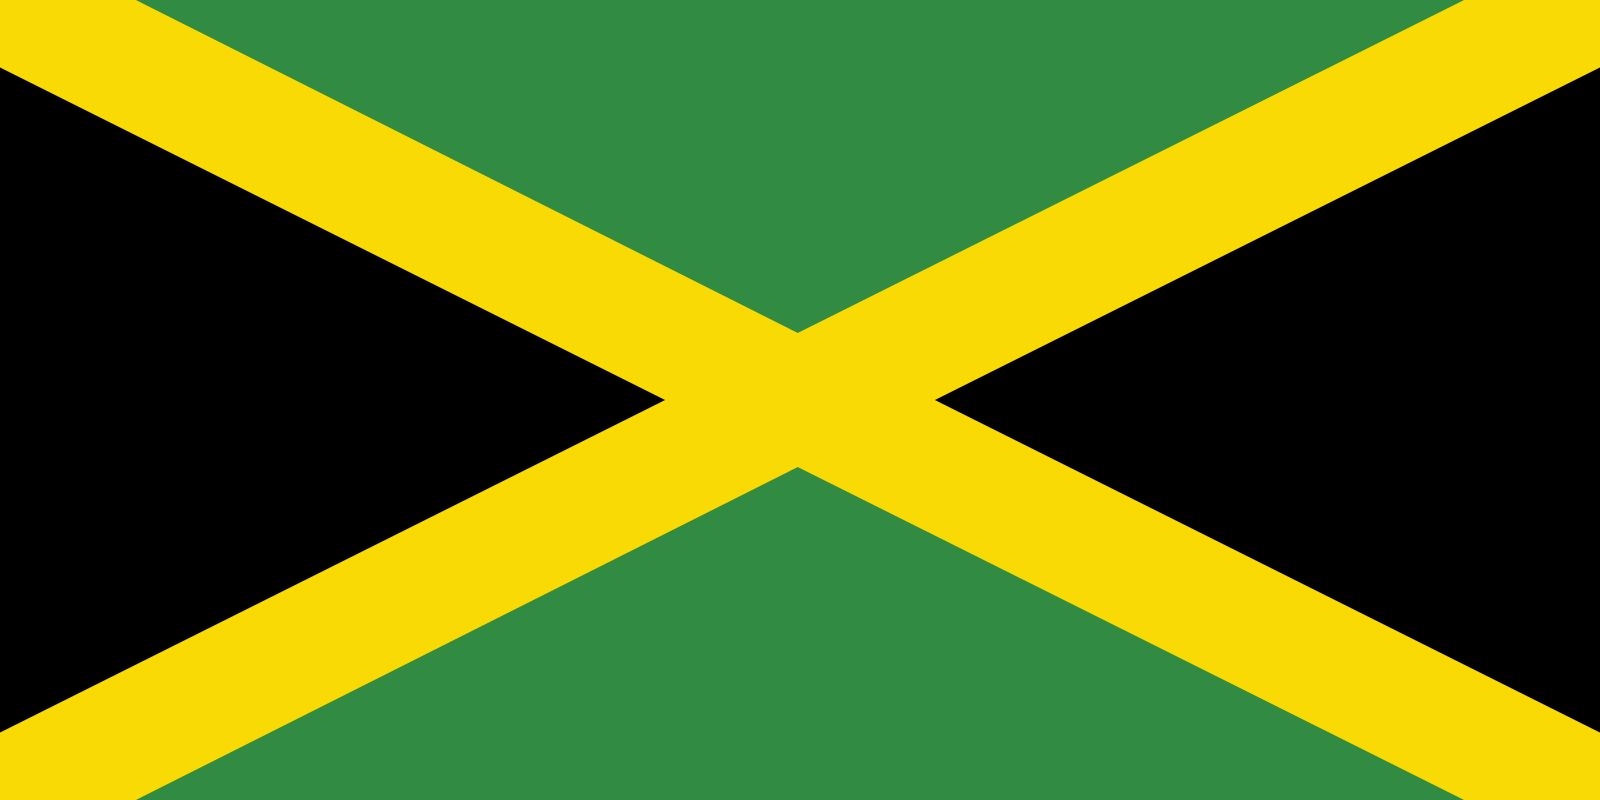 Flag Of Jamaica National Symbols Colors Design Britannica